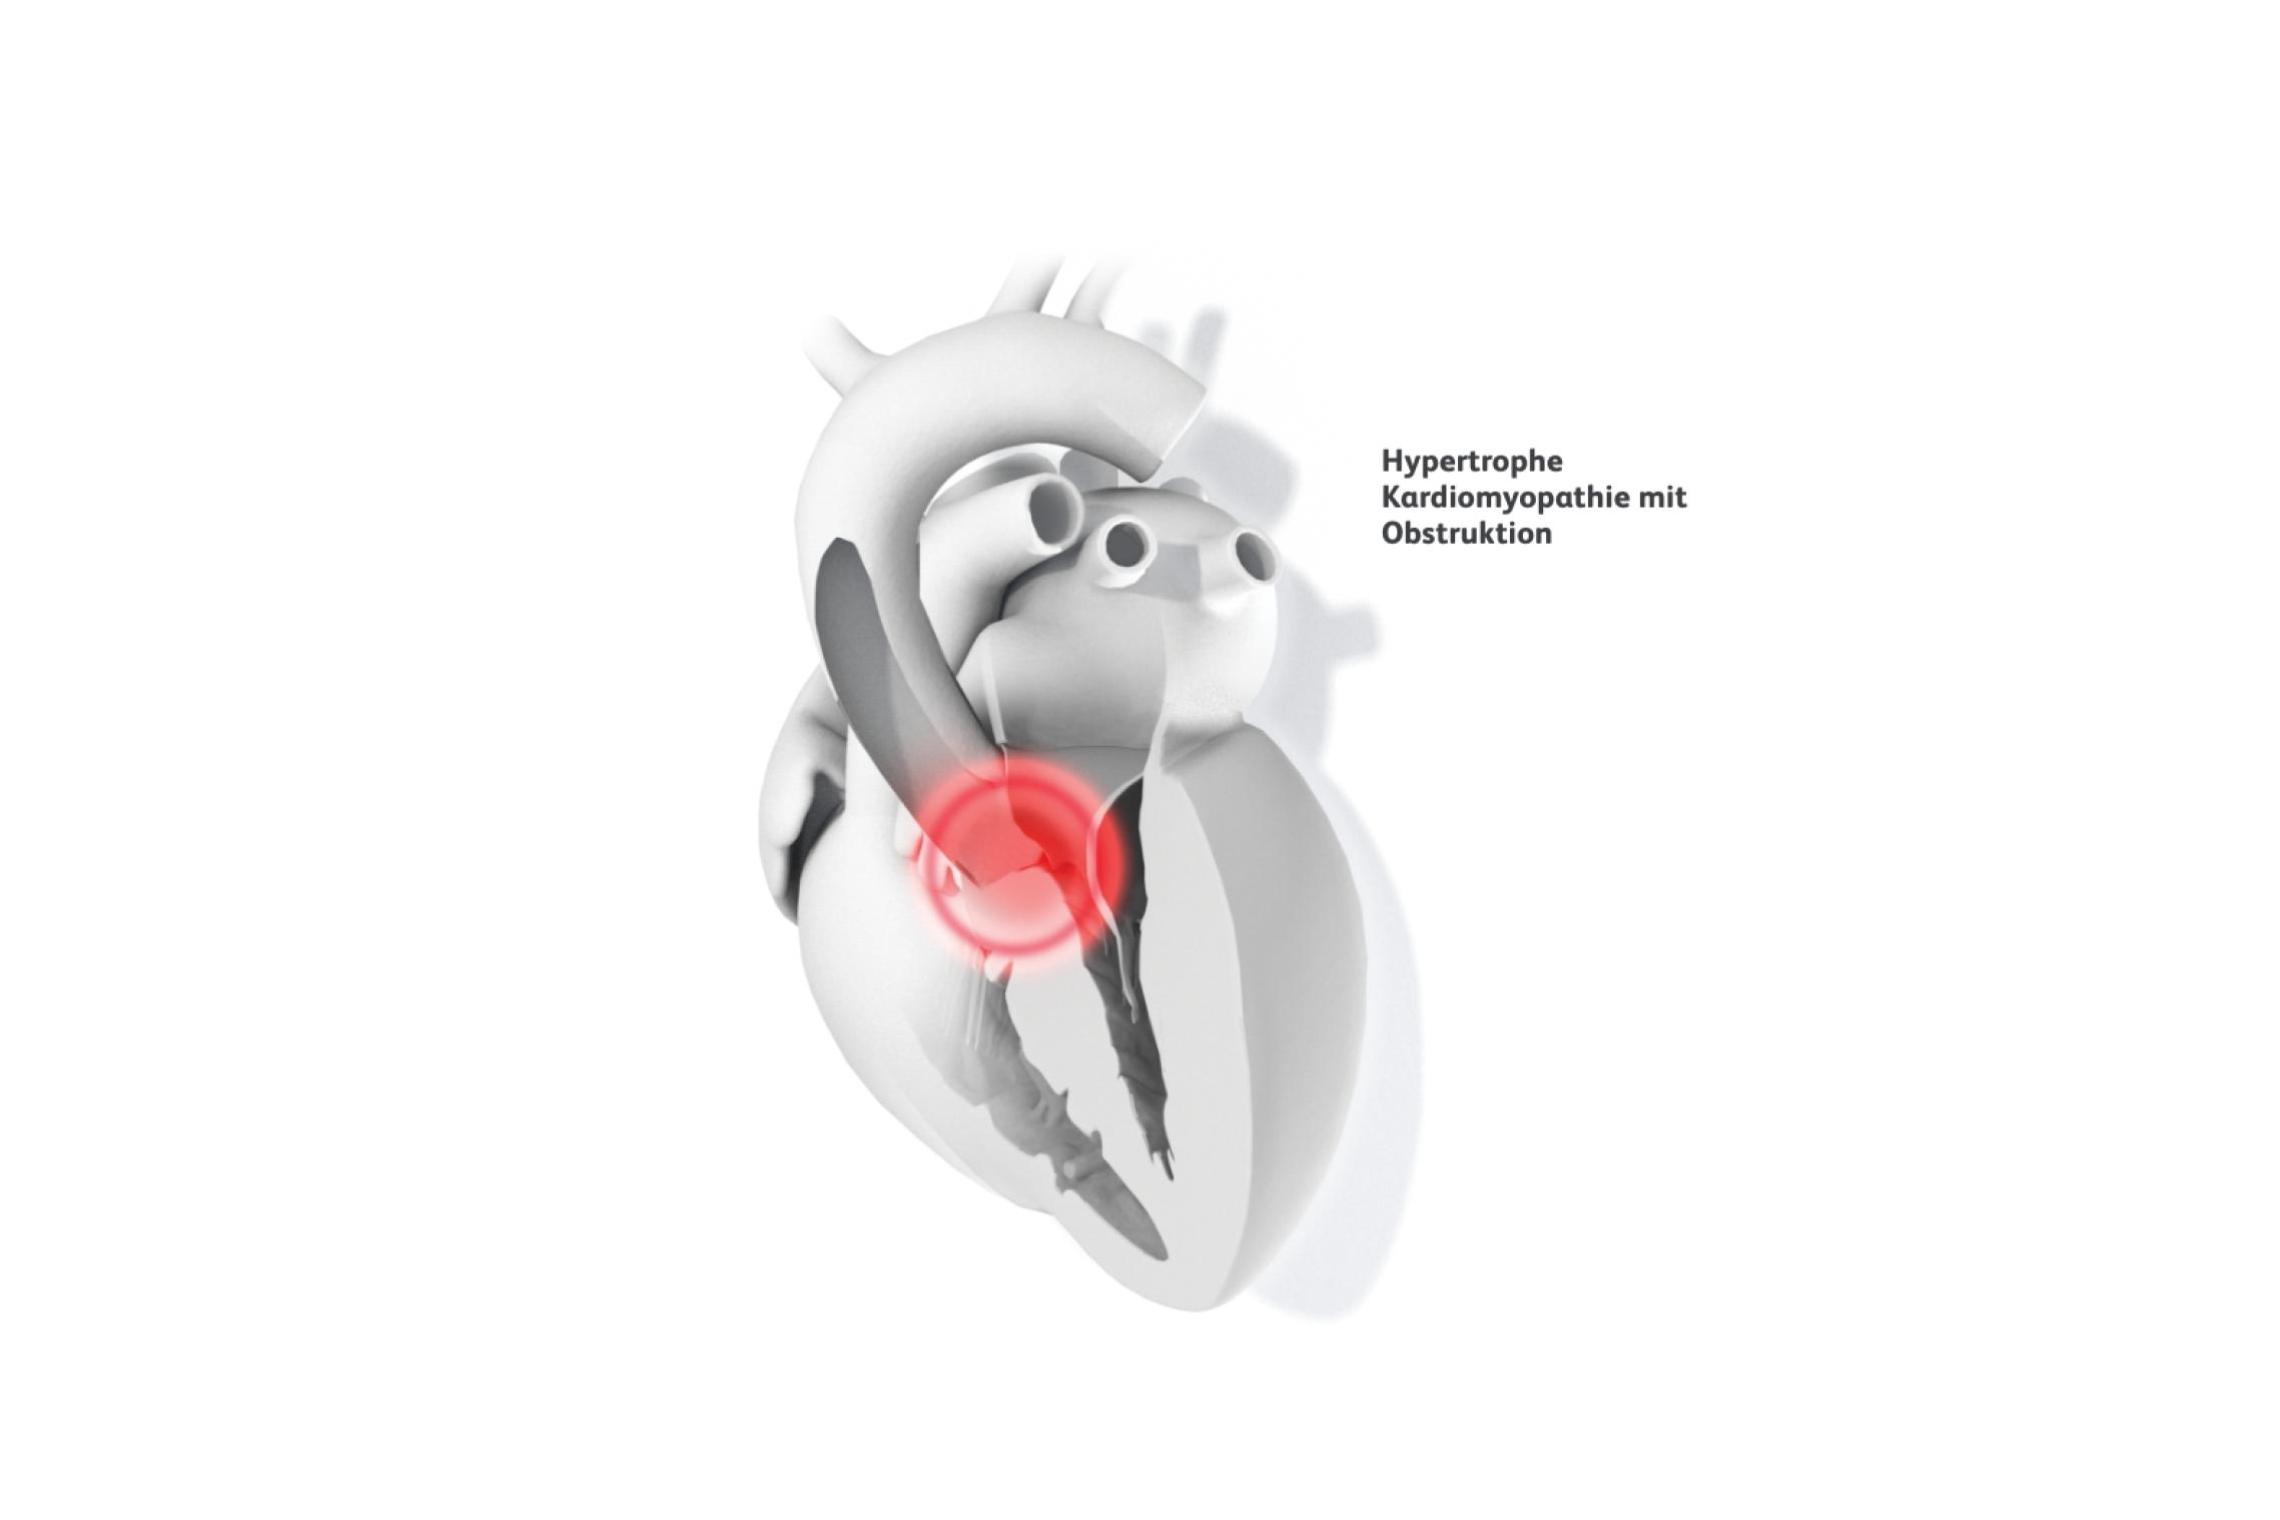 medizinische Illustration Herzen mit hypertropher Kardiomyopathie mit Obstruktion